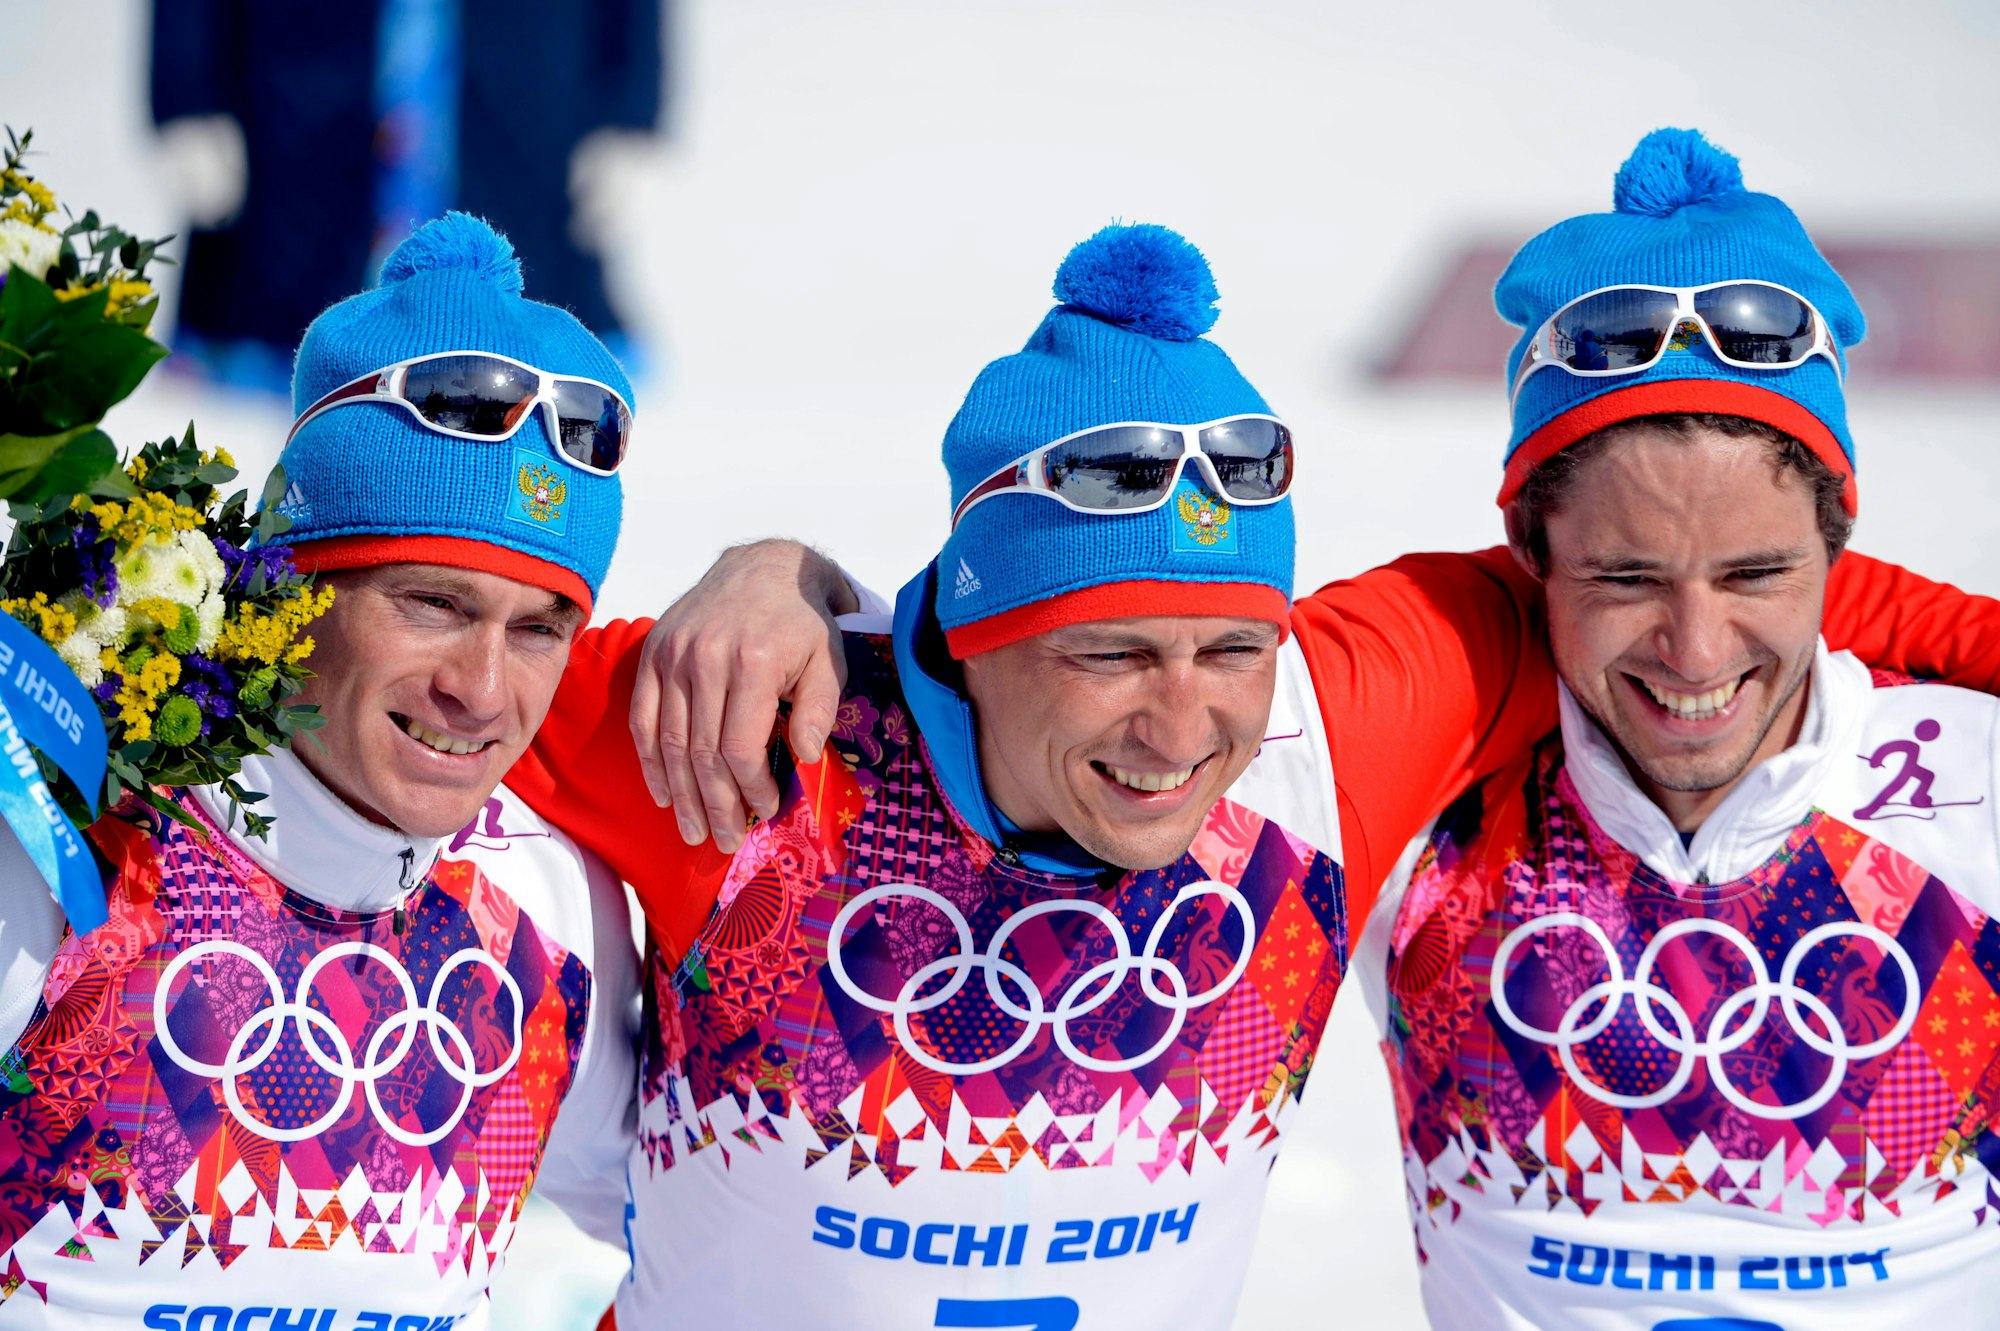 Die drei russischen Medaillengewinner im 50 km-Massenstart Maxim Vylegzhanin, Alexander Legkov undIlia Chernousov posieren für ein Foto.